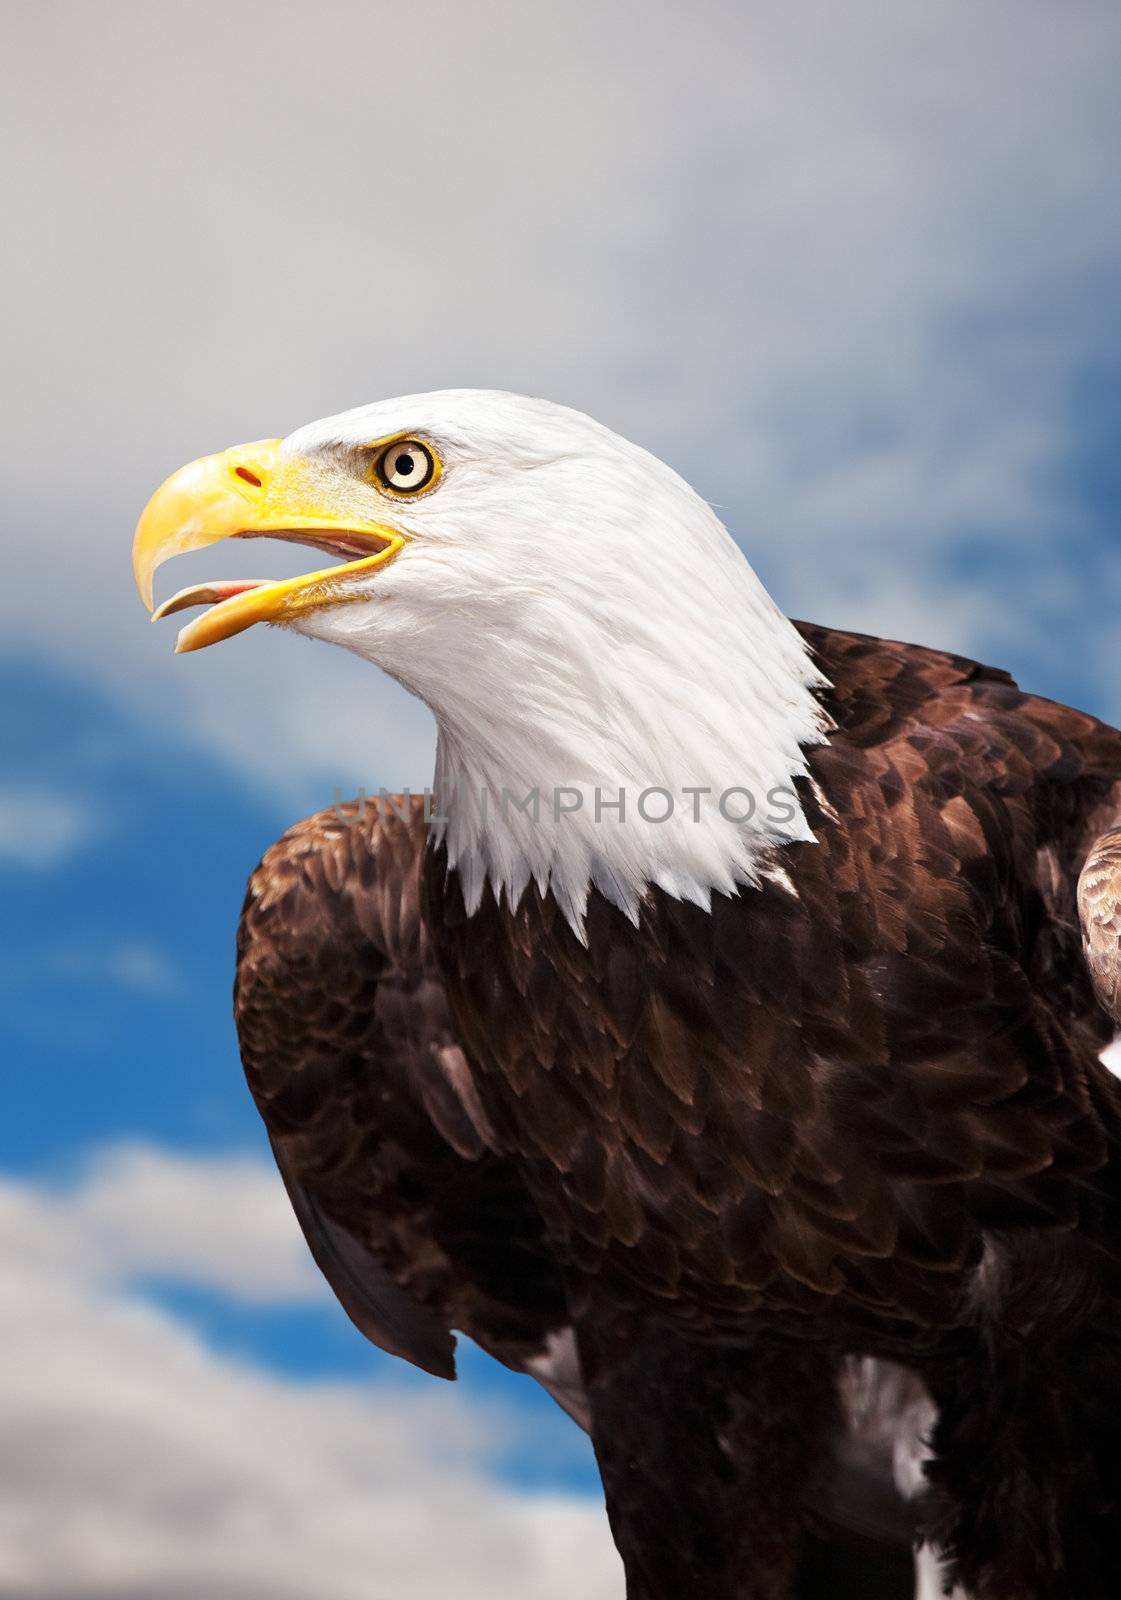 A Bald Eagle against a cloudy sky.